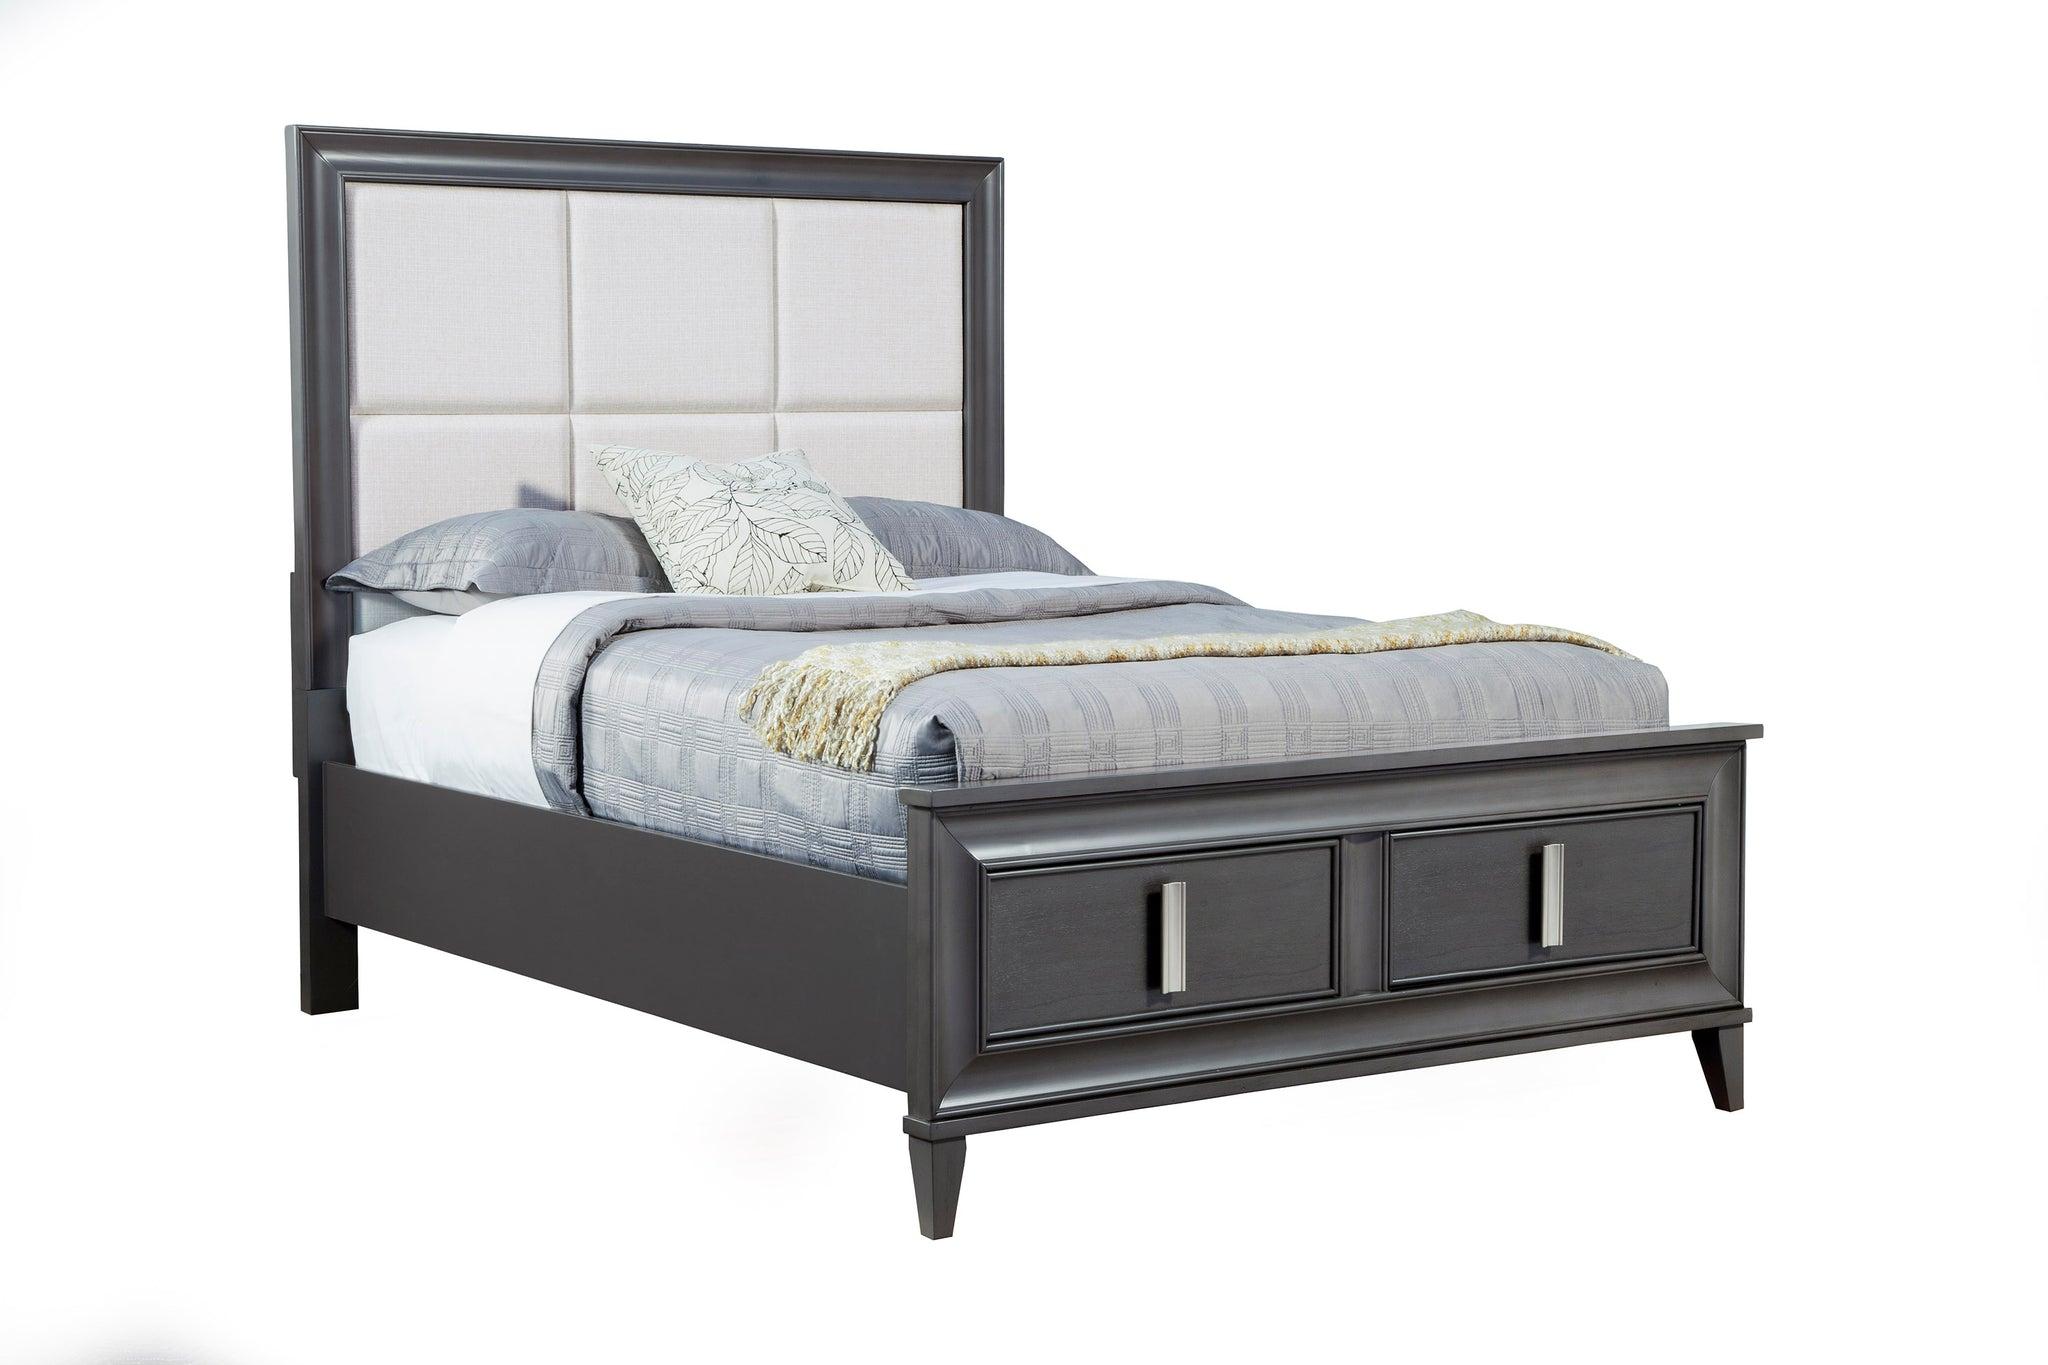 Contemporary, Modern Storage Bed LORRAINE 8171-07EK in Dark Gray, Cream Fabric